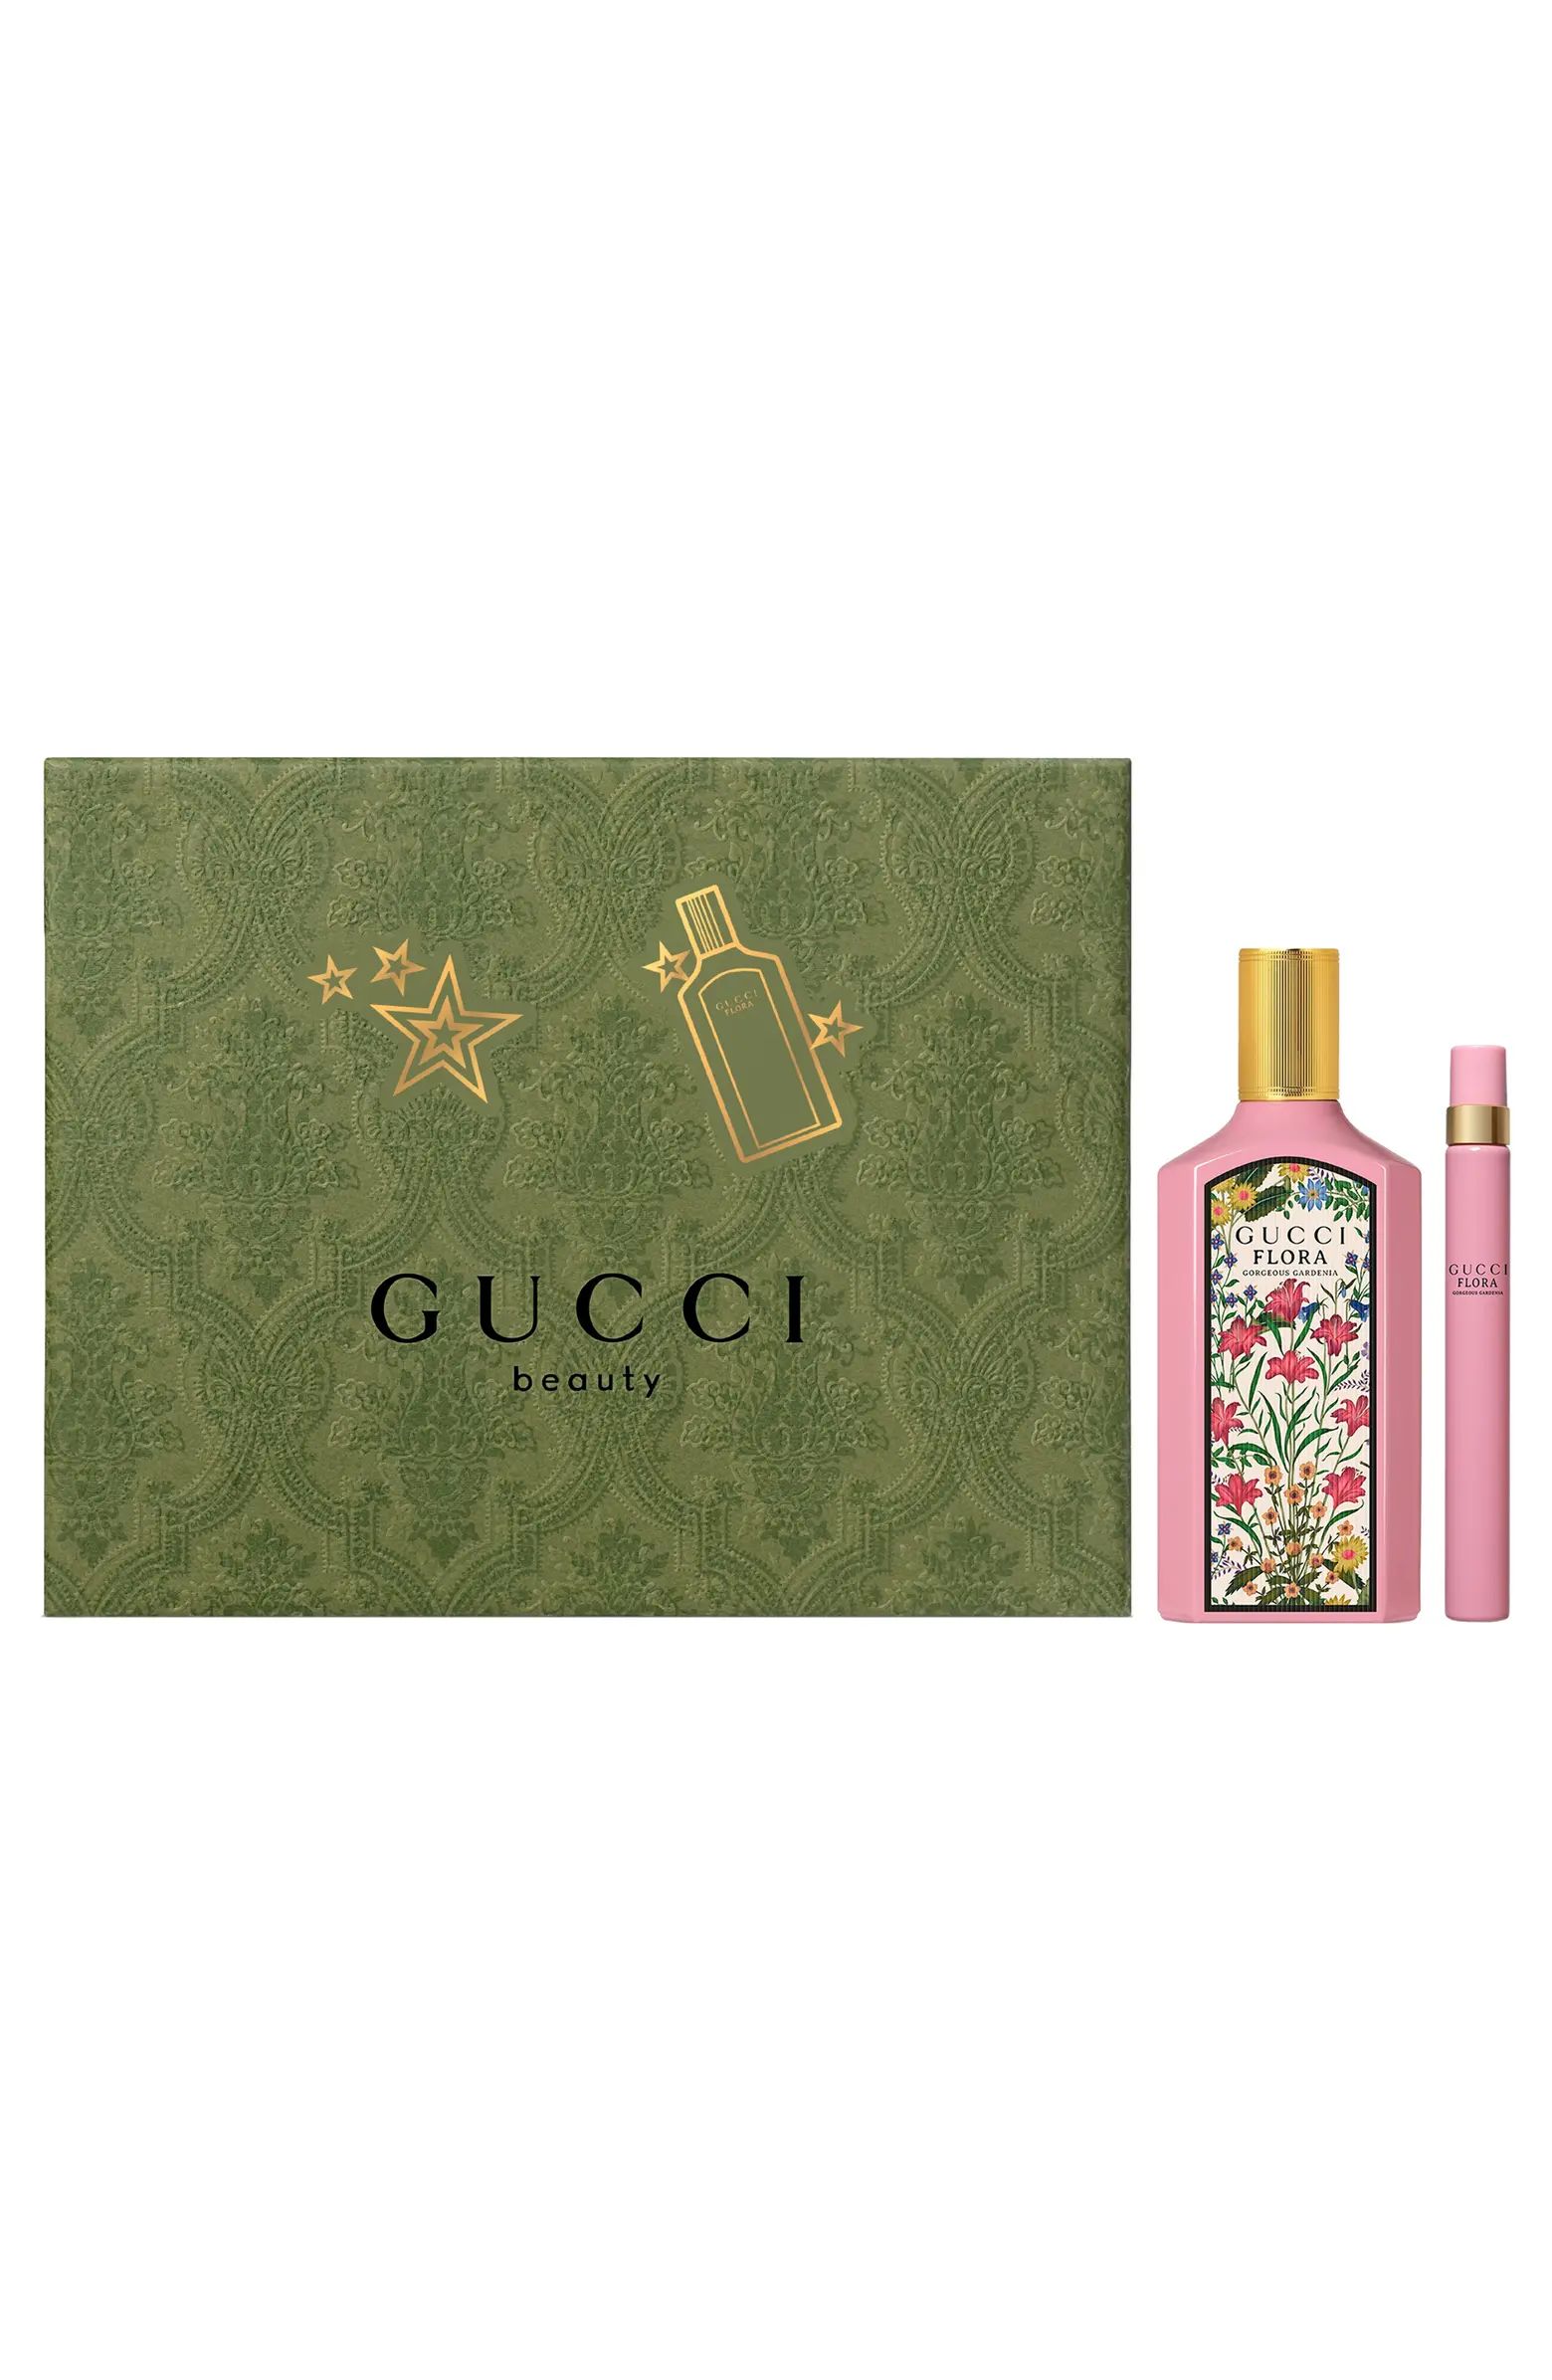 Flora Gorgeous Gardenia Eau de Parfum Gift Set $206 Value | Nordstrom